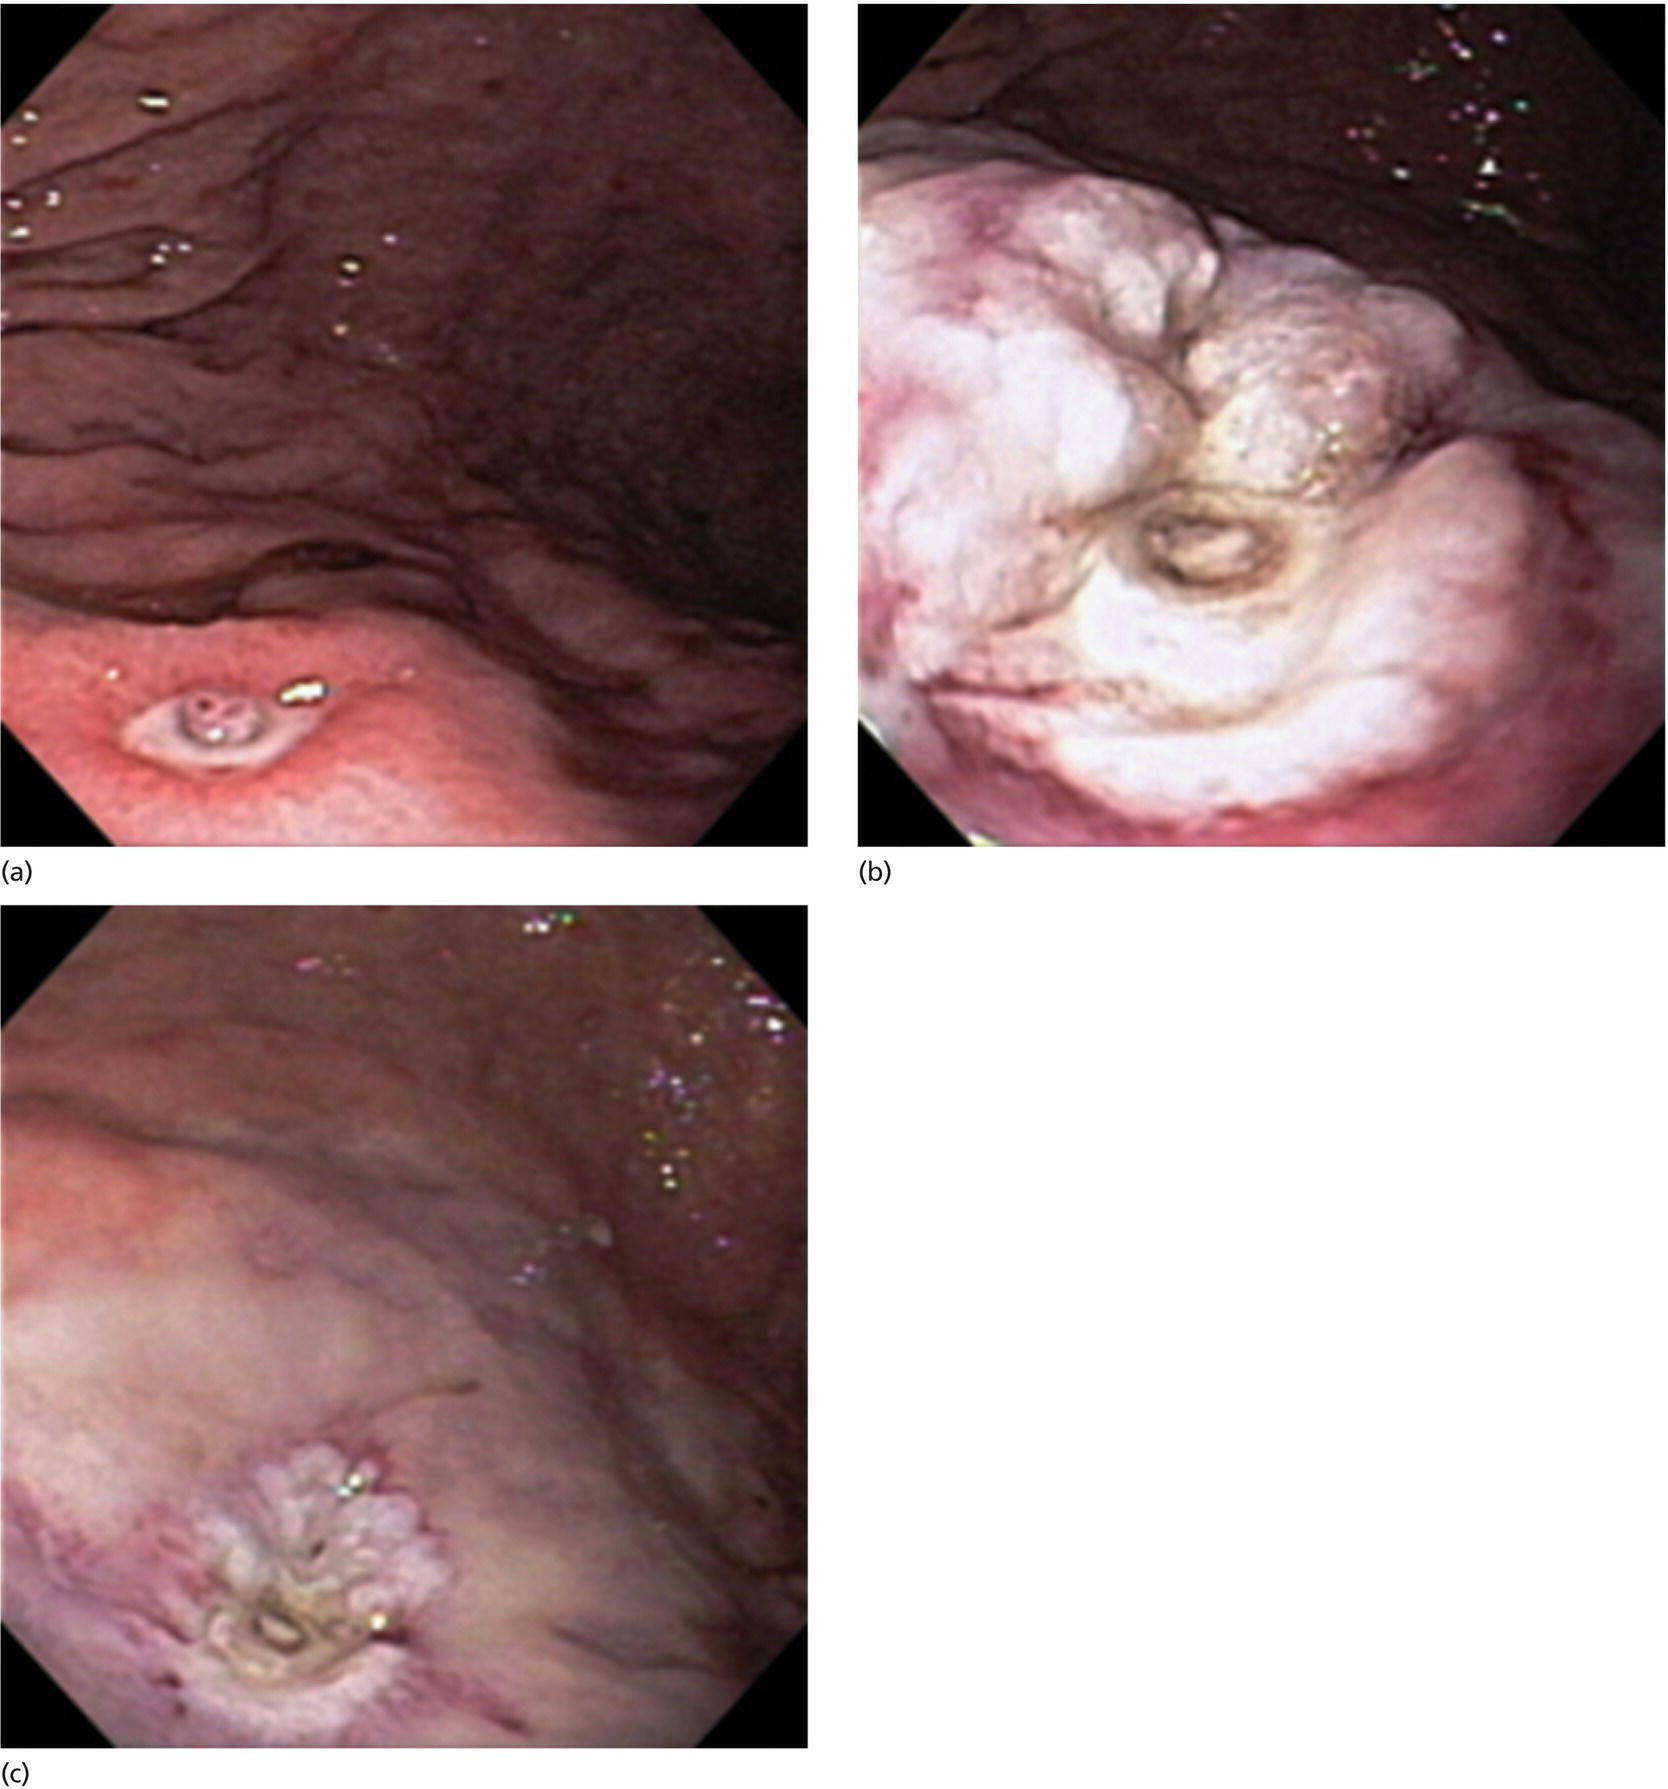 Photos depict doppler ultrasound-guided hemostasis in acute peptic ulcer bleeding.